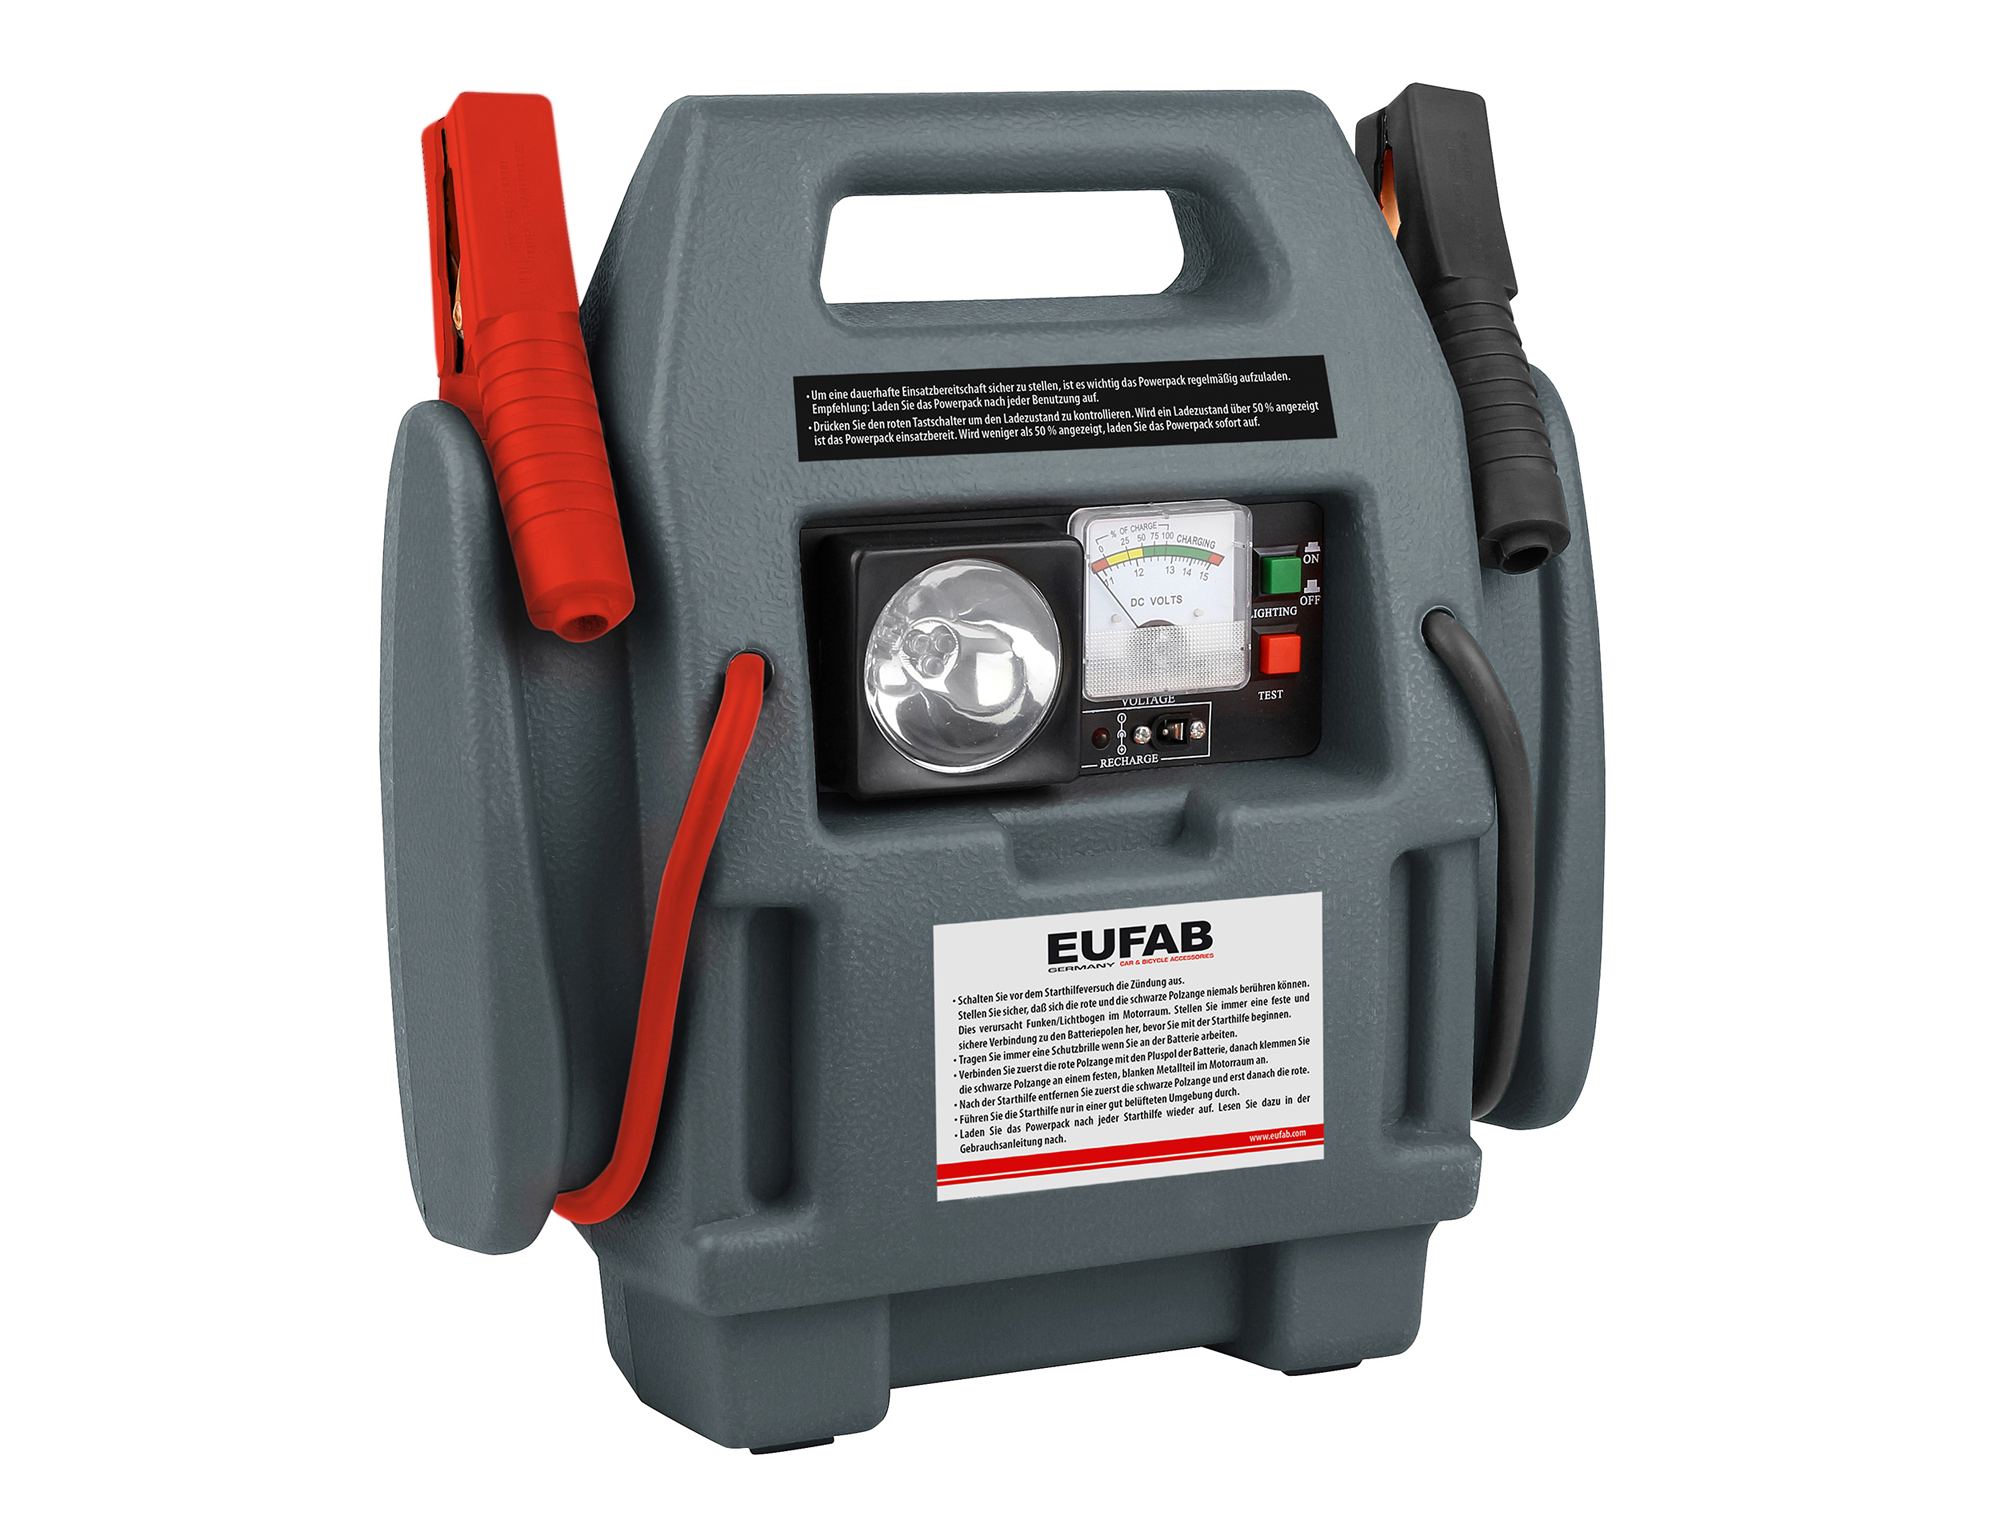 Eufab Powerpack mit Kompressor 7 Ah